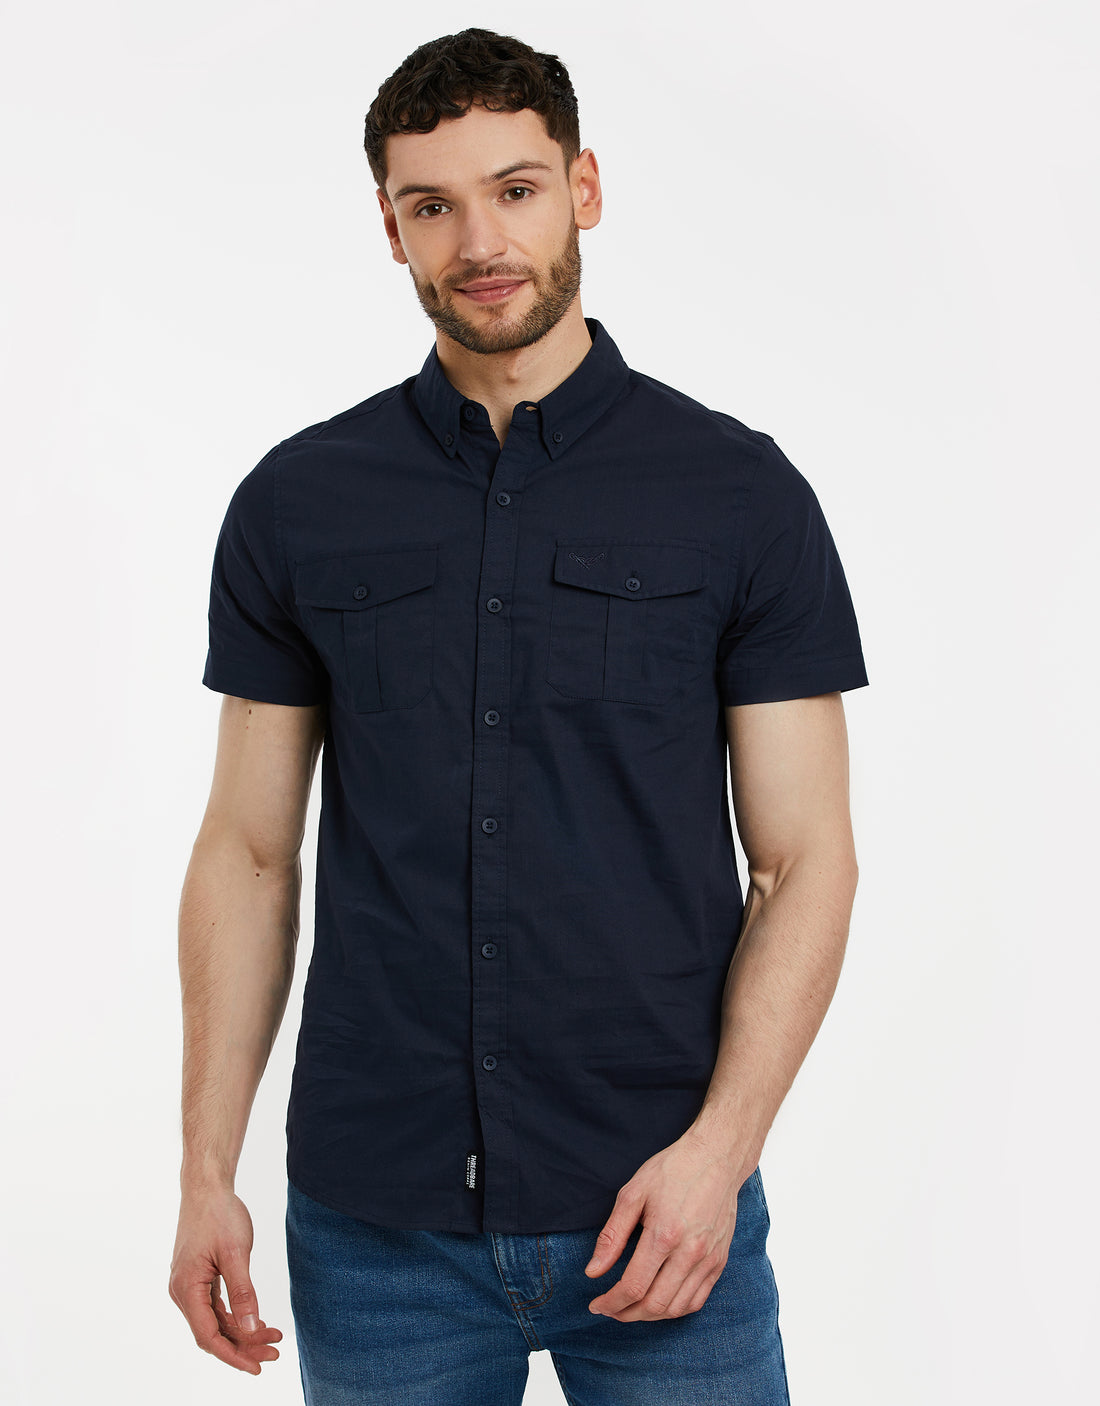 Men's Navy Blue Cotton Poplin Short Sleeve Shirt – Threadbare